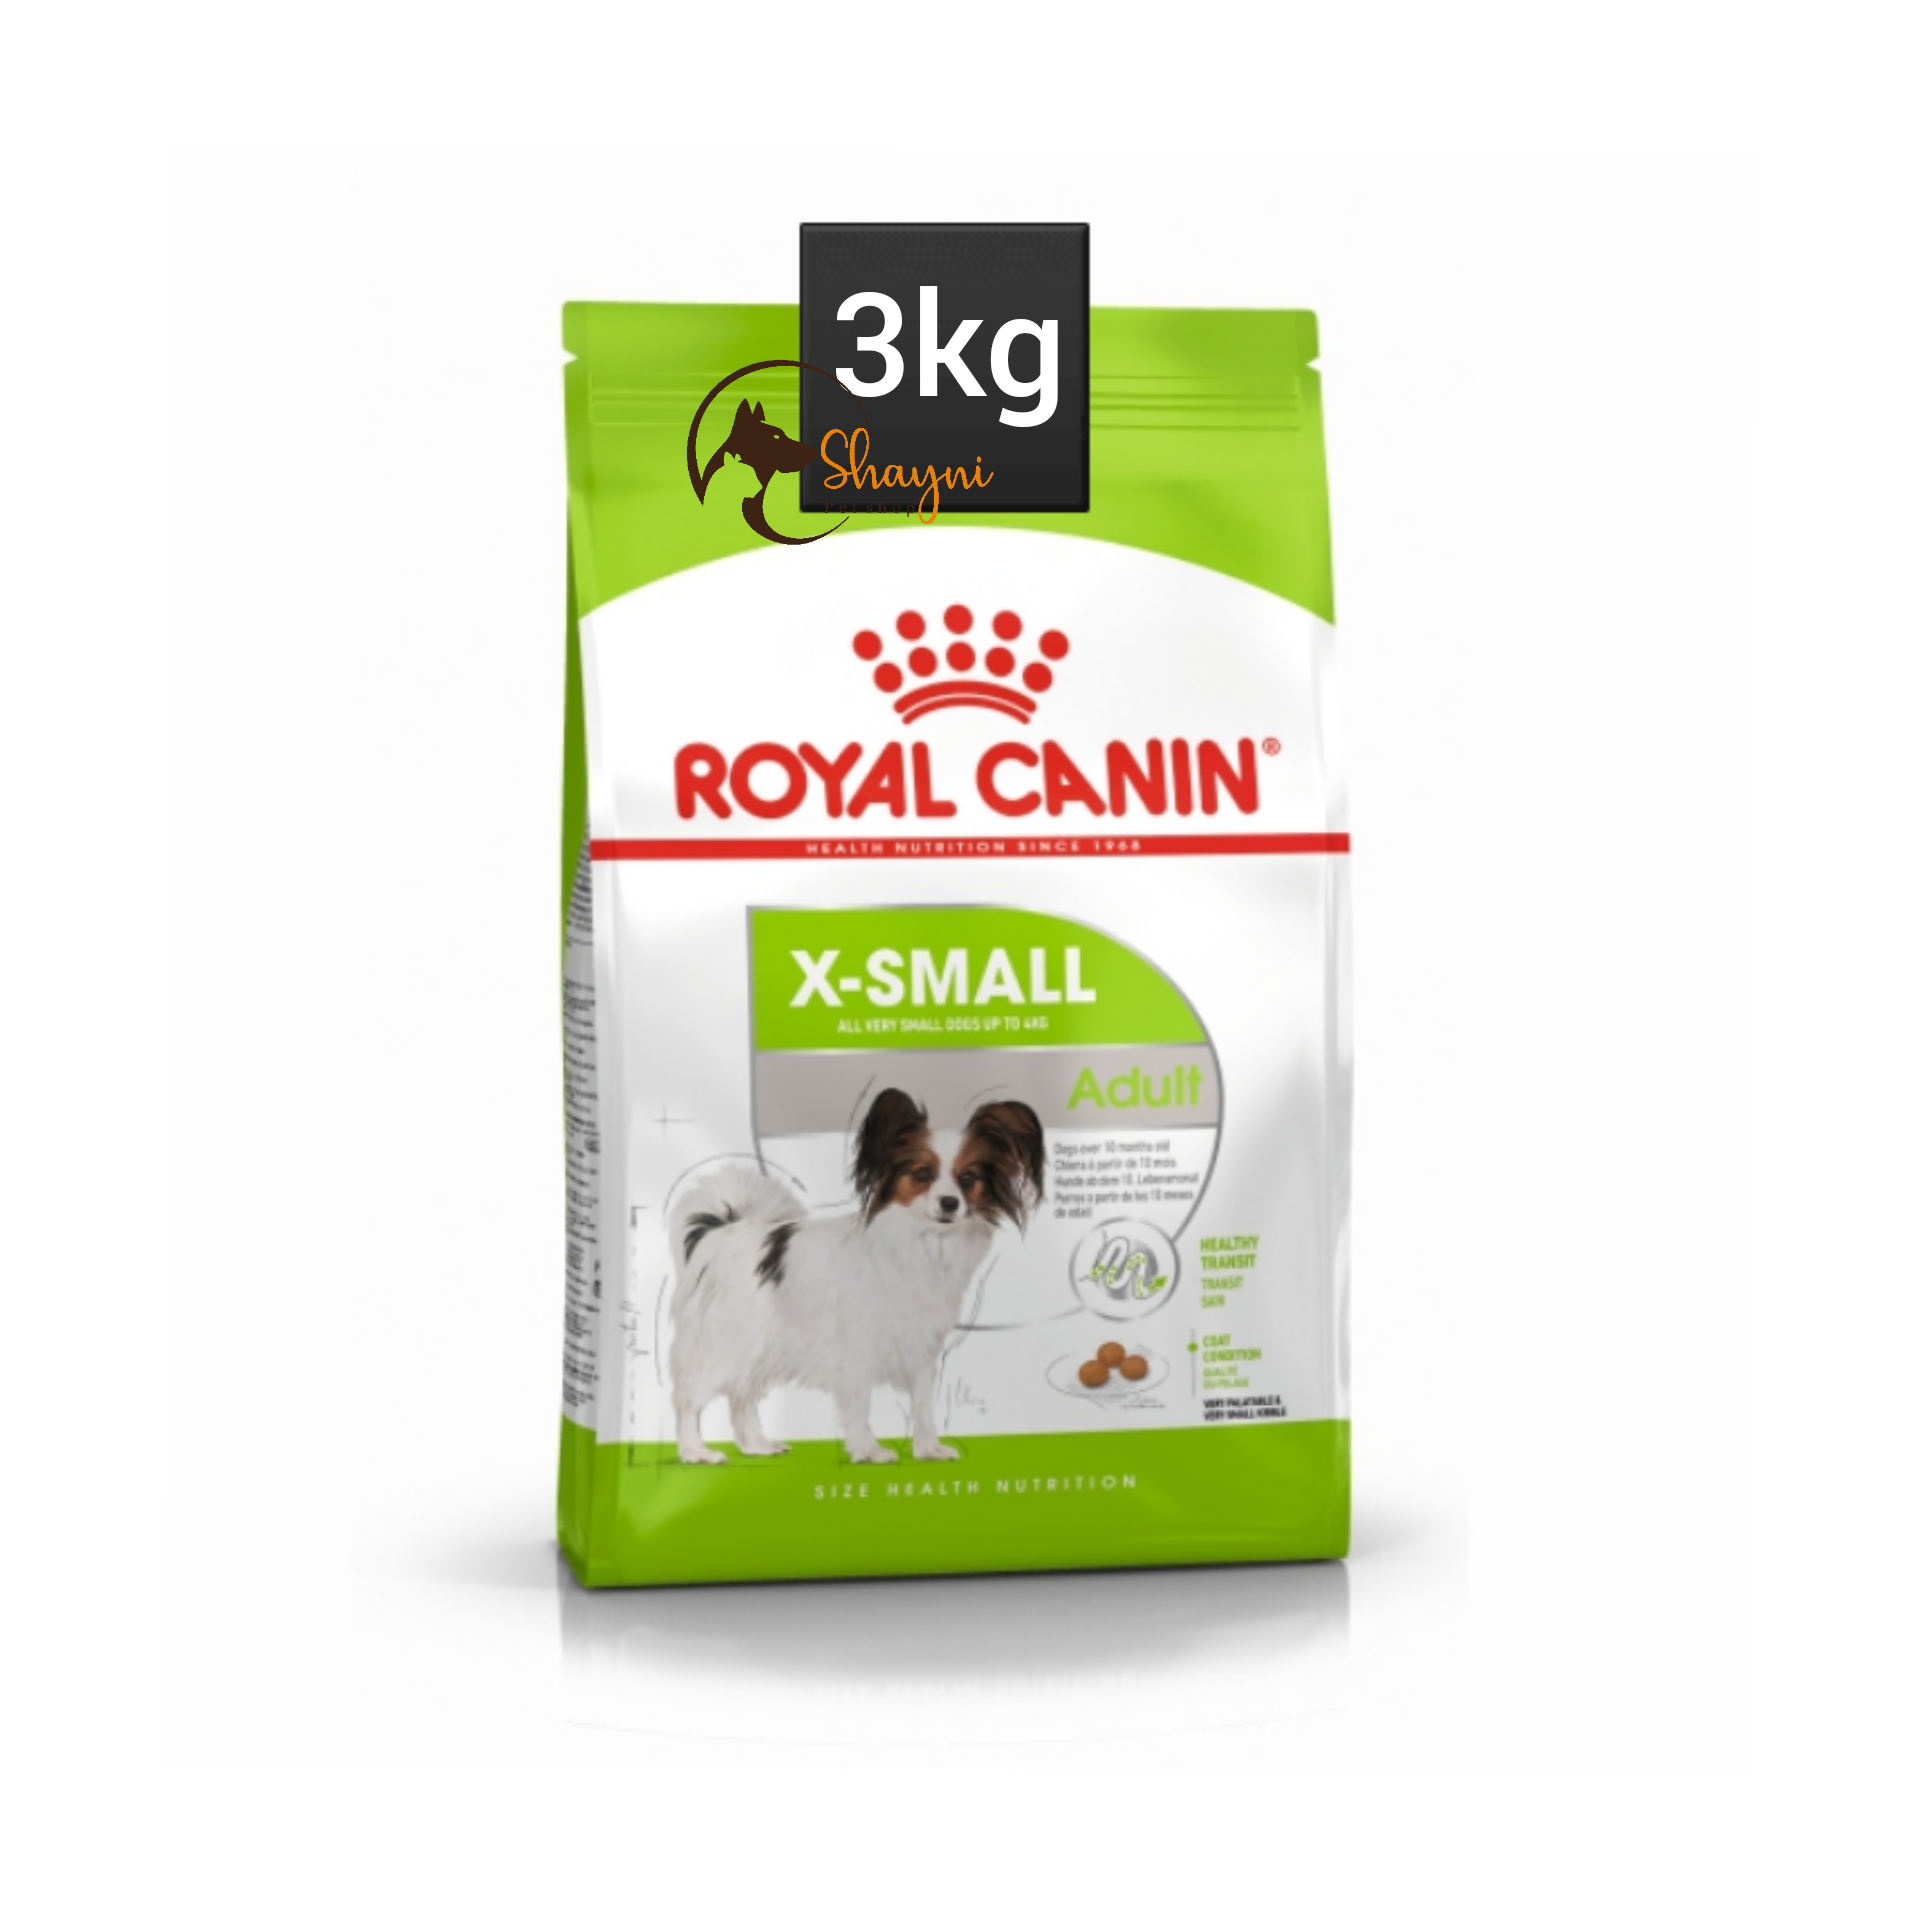 غذای خشک سگ رویال کنین مدل ایکس اسمال | X-Small وزن ۳کیلوگرم